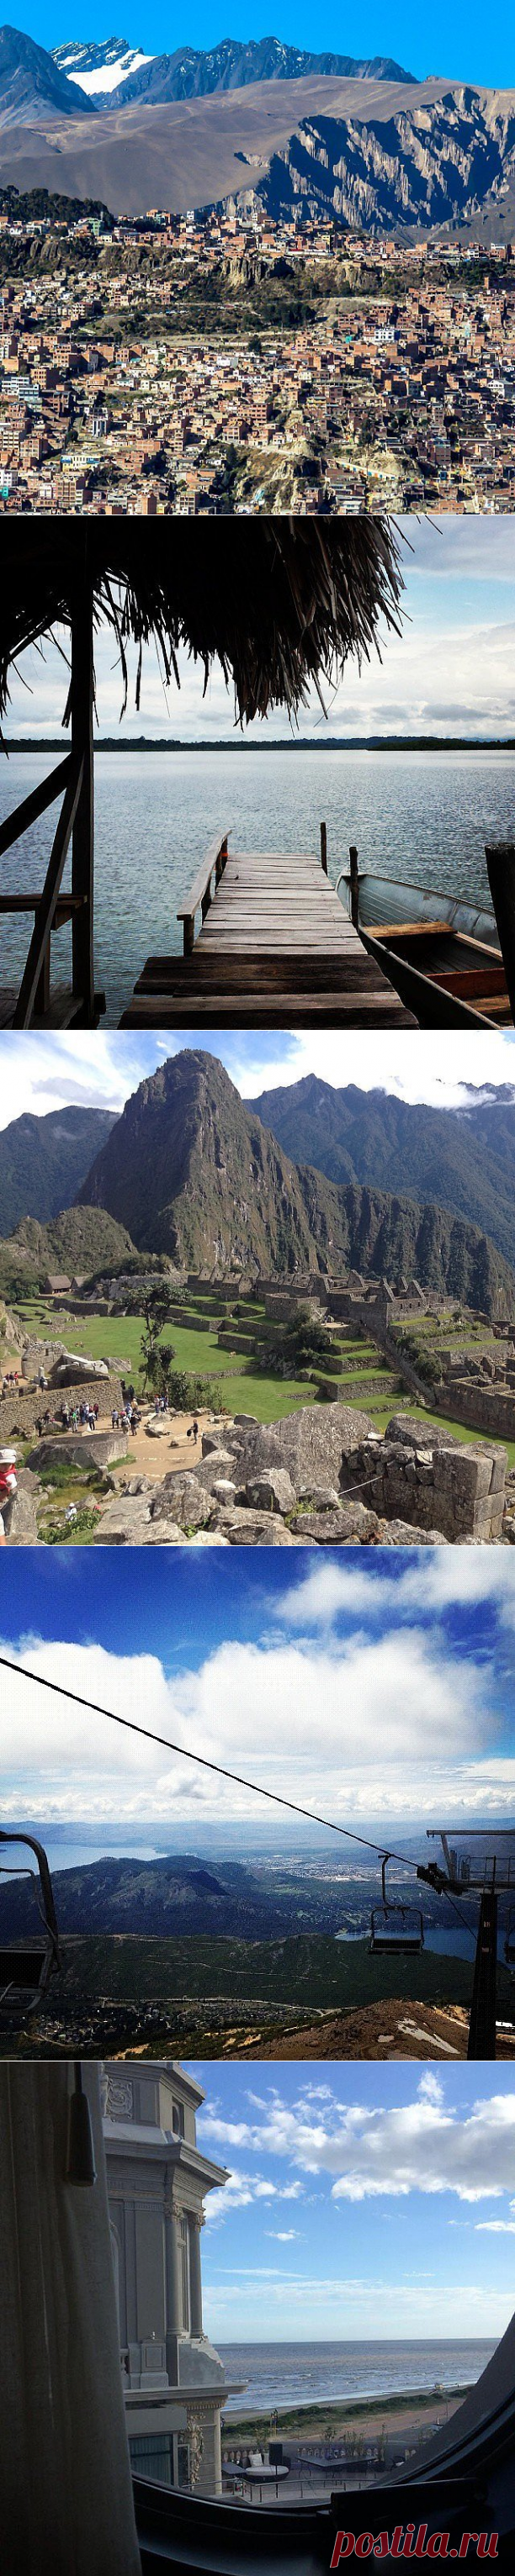 Города Латинской Америки, которые непременно стоит посетить туристу &#8212; Туризм